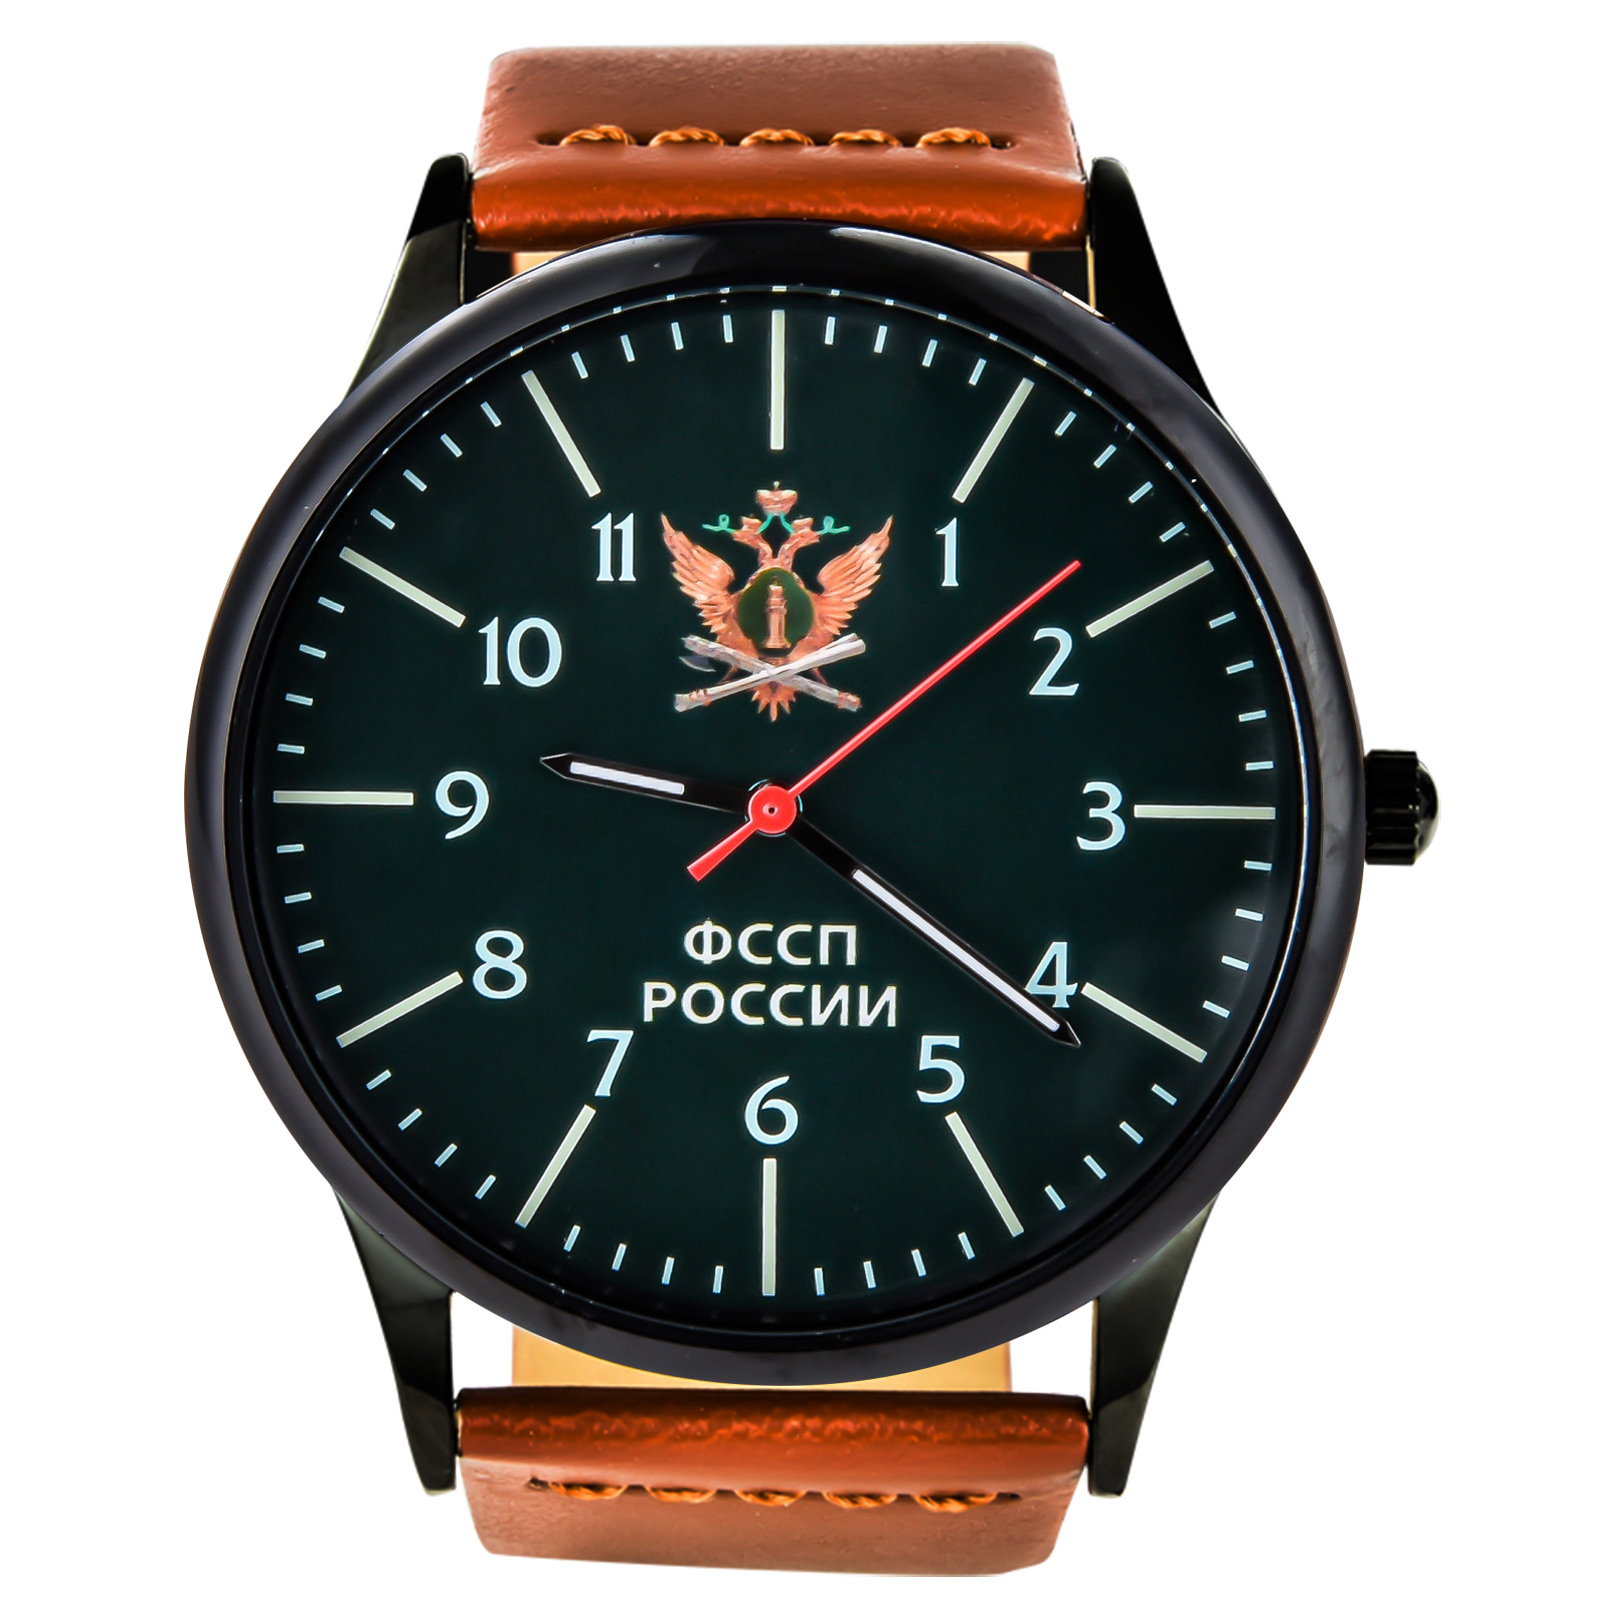 Командирские часы в подарок сотруднику ФССП купить в Военпро